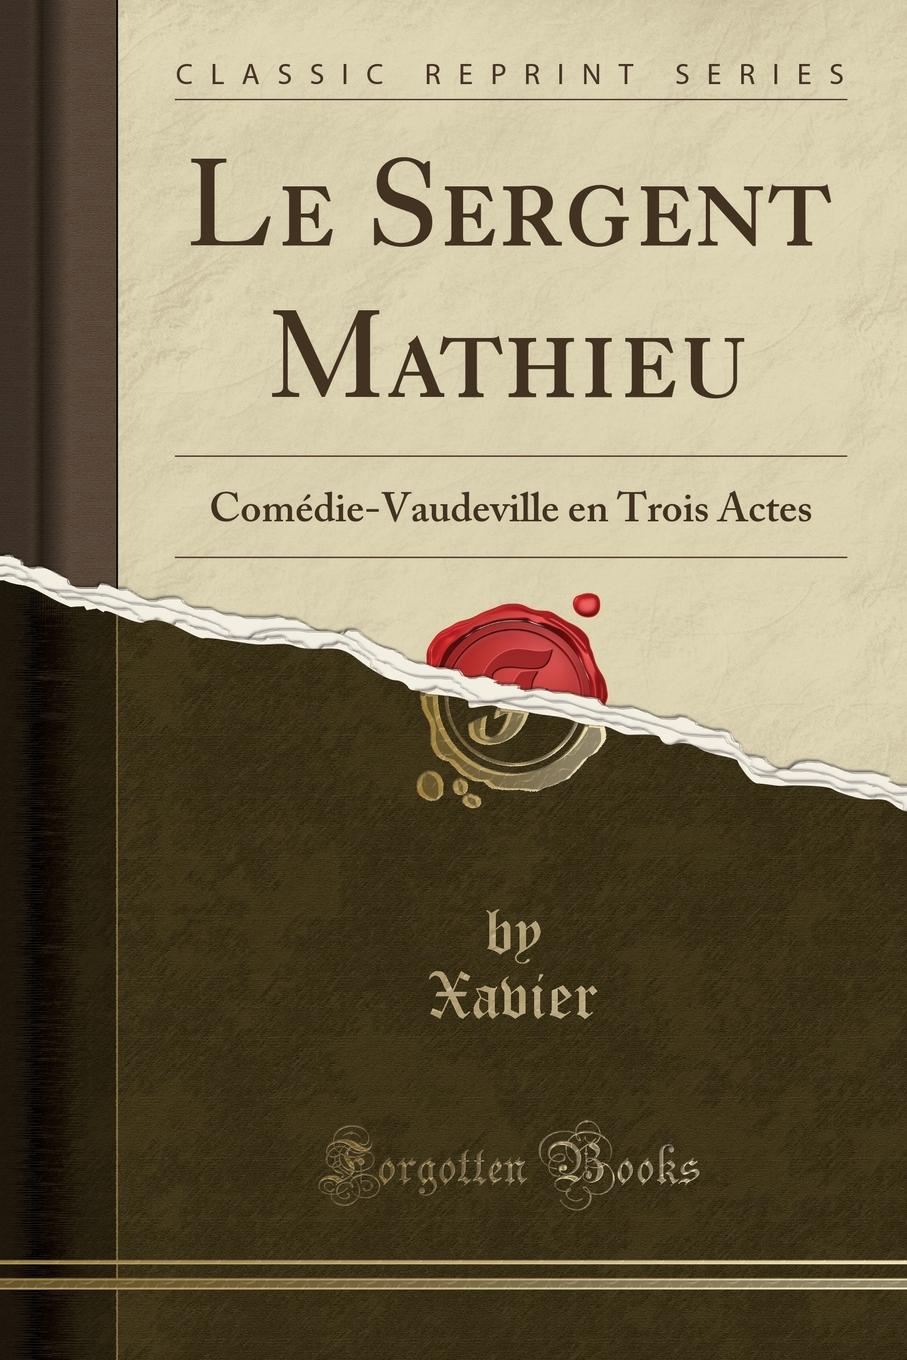 Xavier Xavier Le Sergent Mathieu. Comedie-Vaudeville en Trois Actes (Classic Reprint)